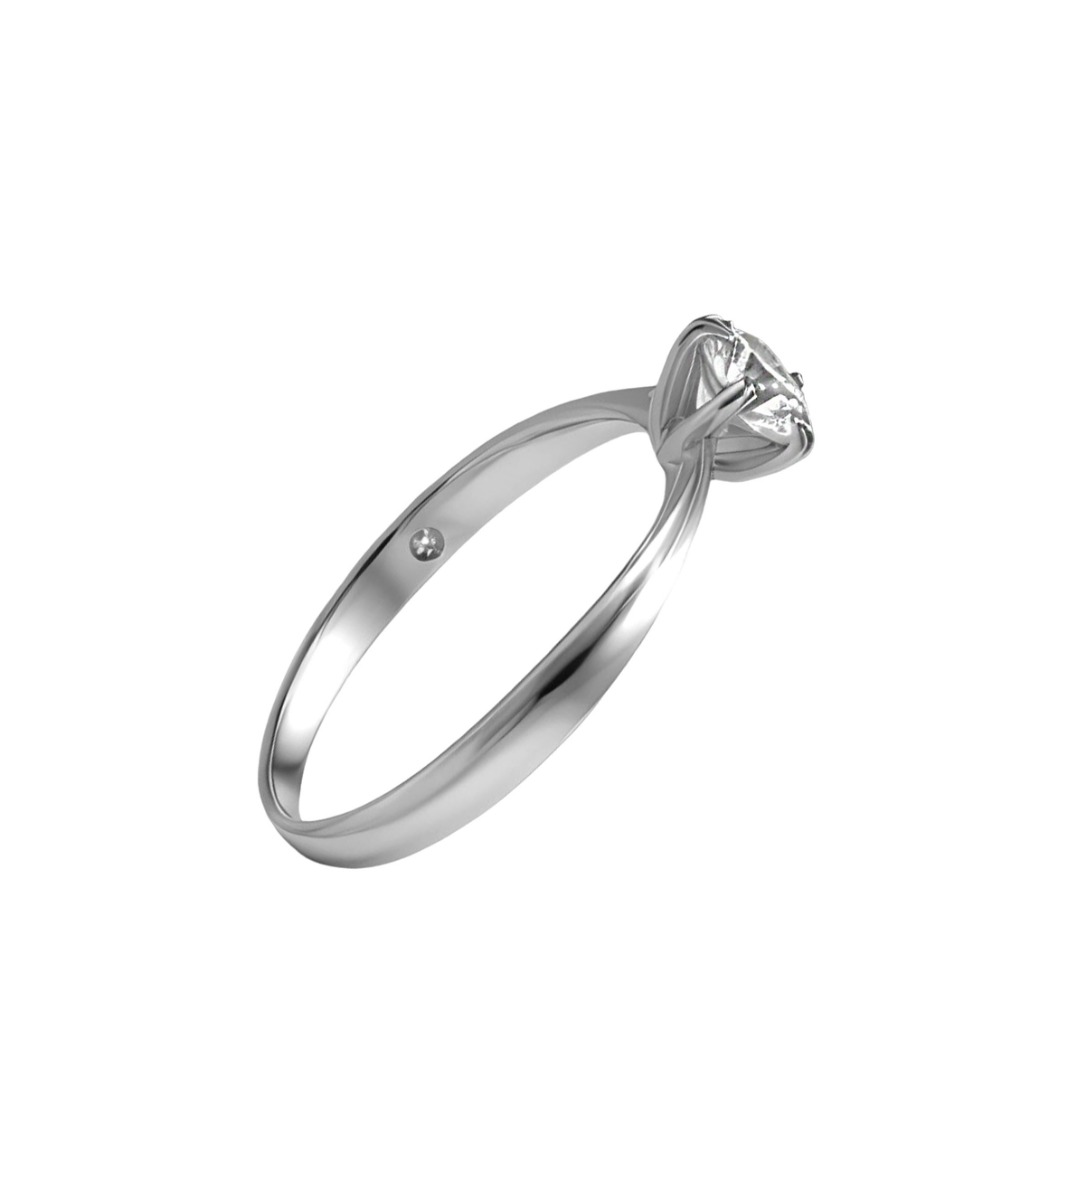 anillo compromiso solitario garra 6 patas con diamante de medio quilate foto lateral